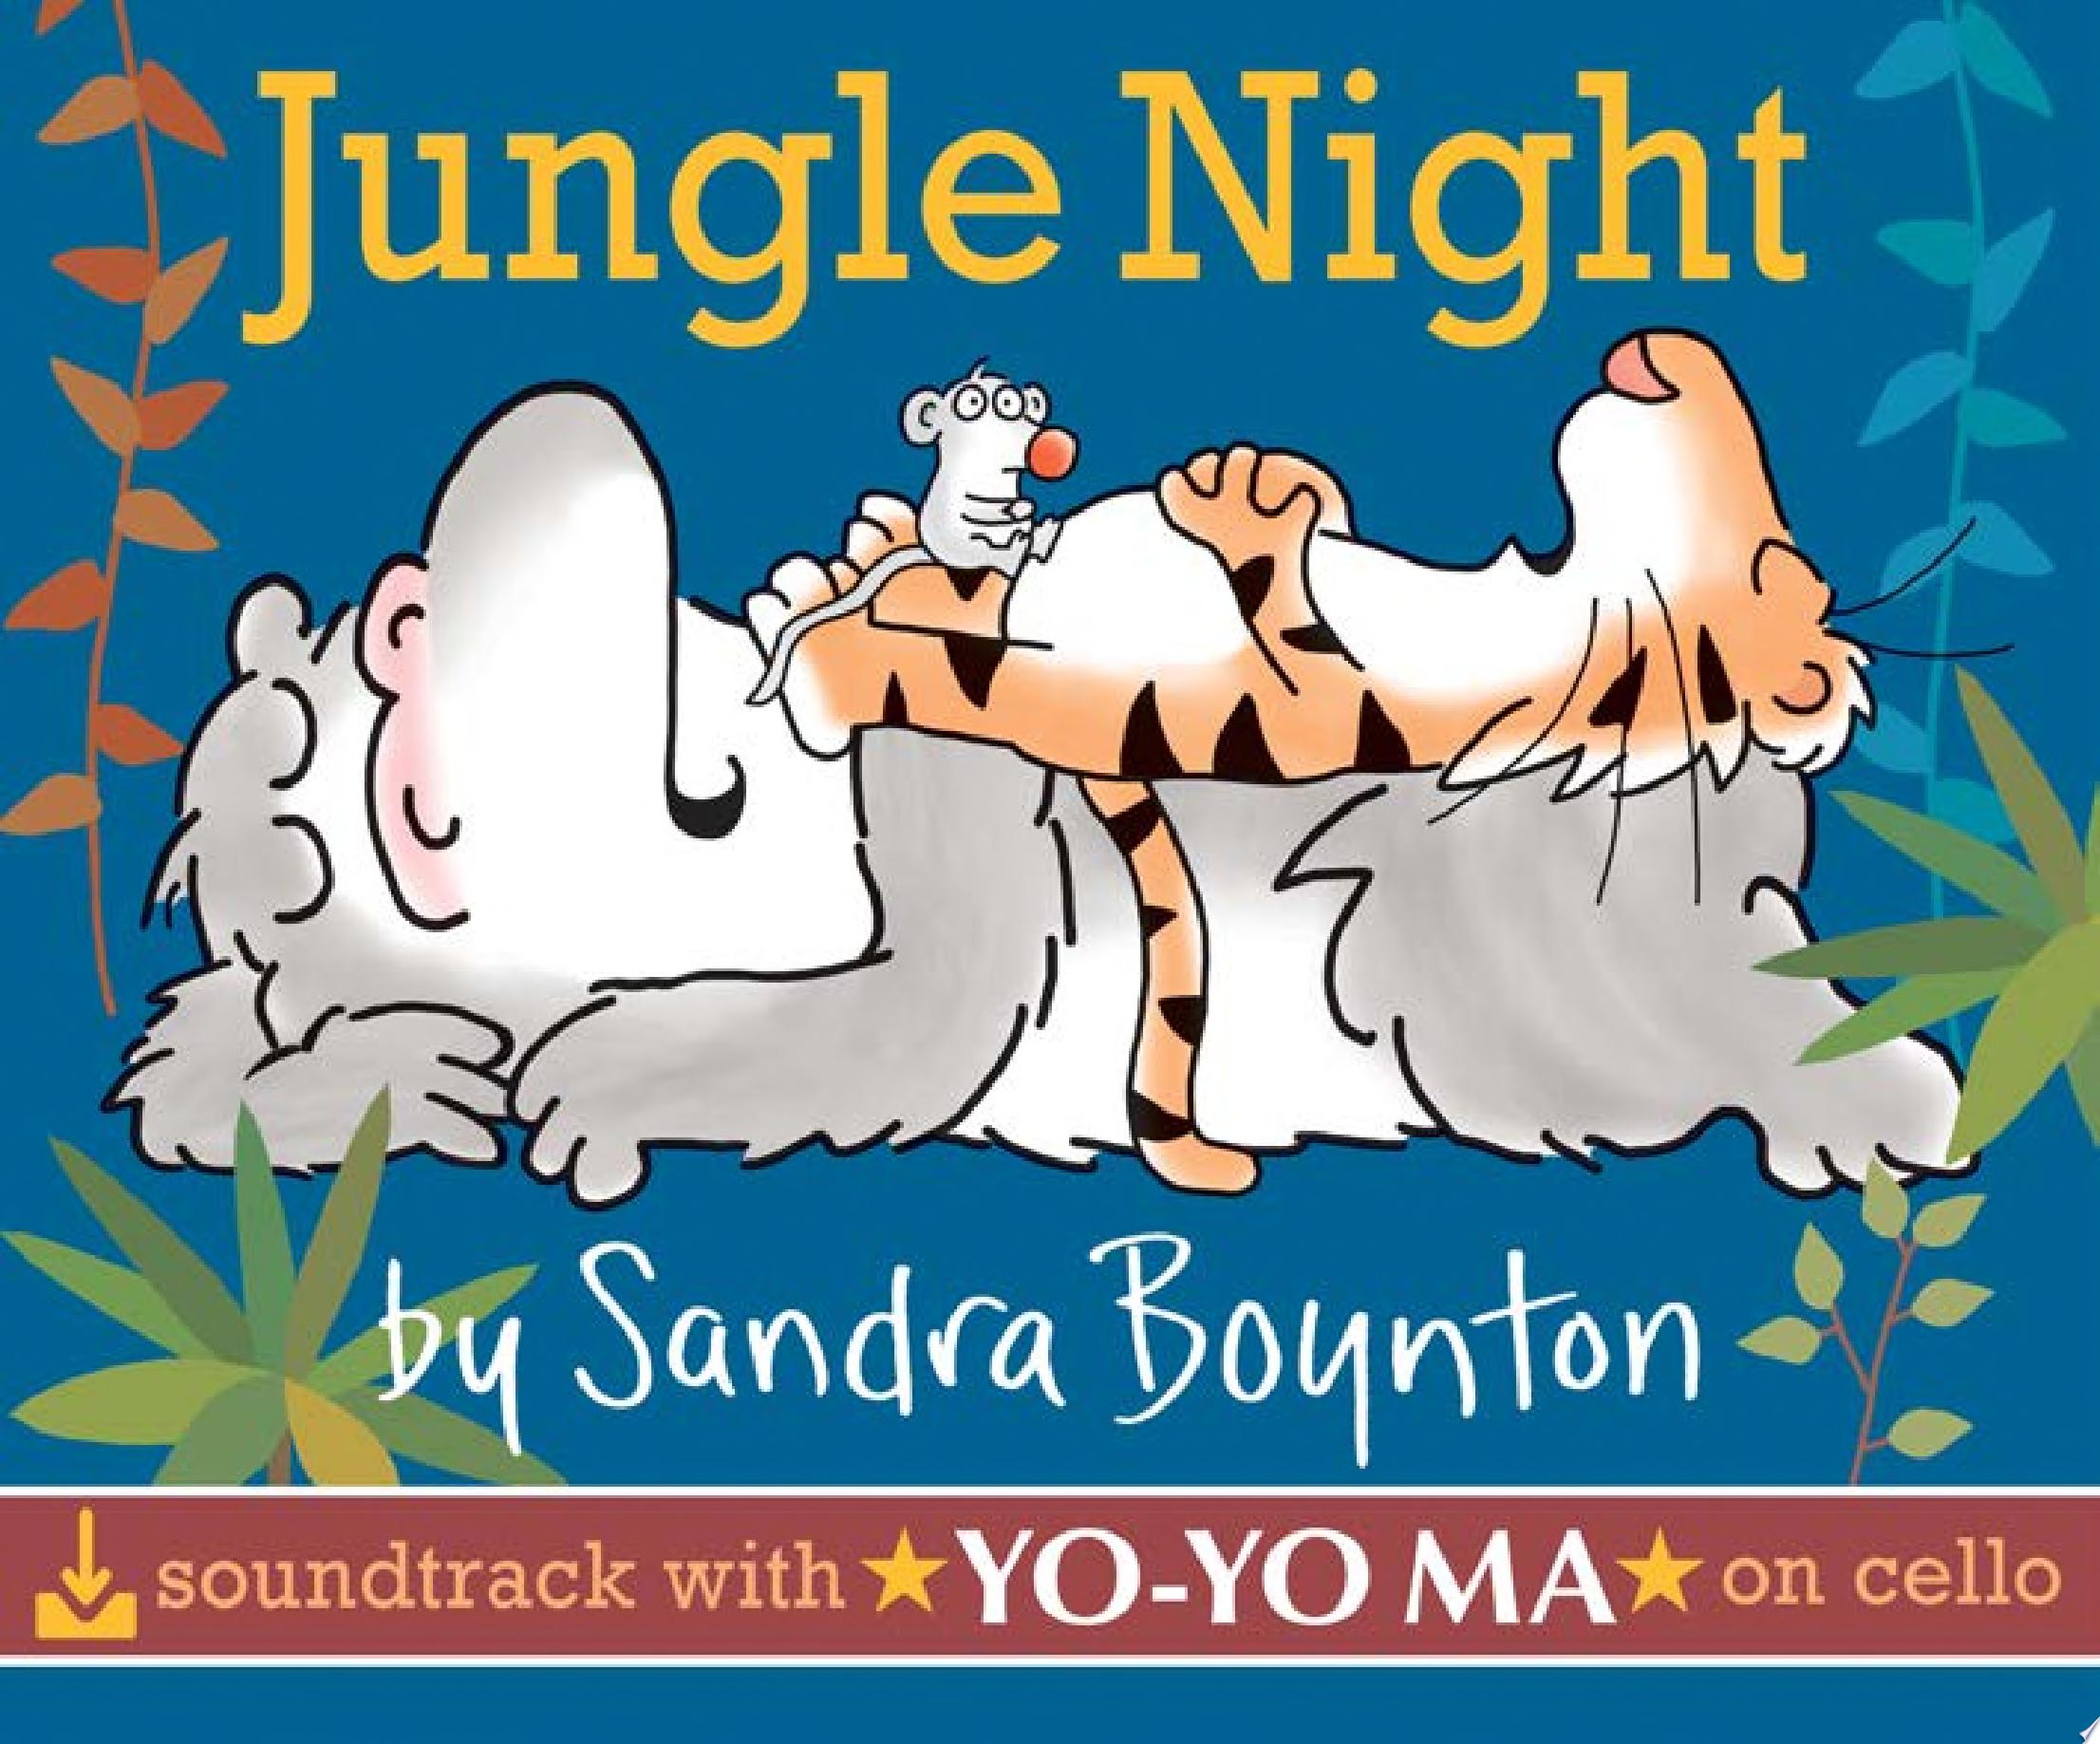 Image for "Jungle Night (comes with 2 free audio downloads, Yo-Yo Ma, cello)"